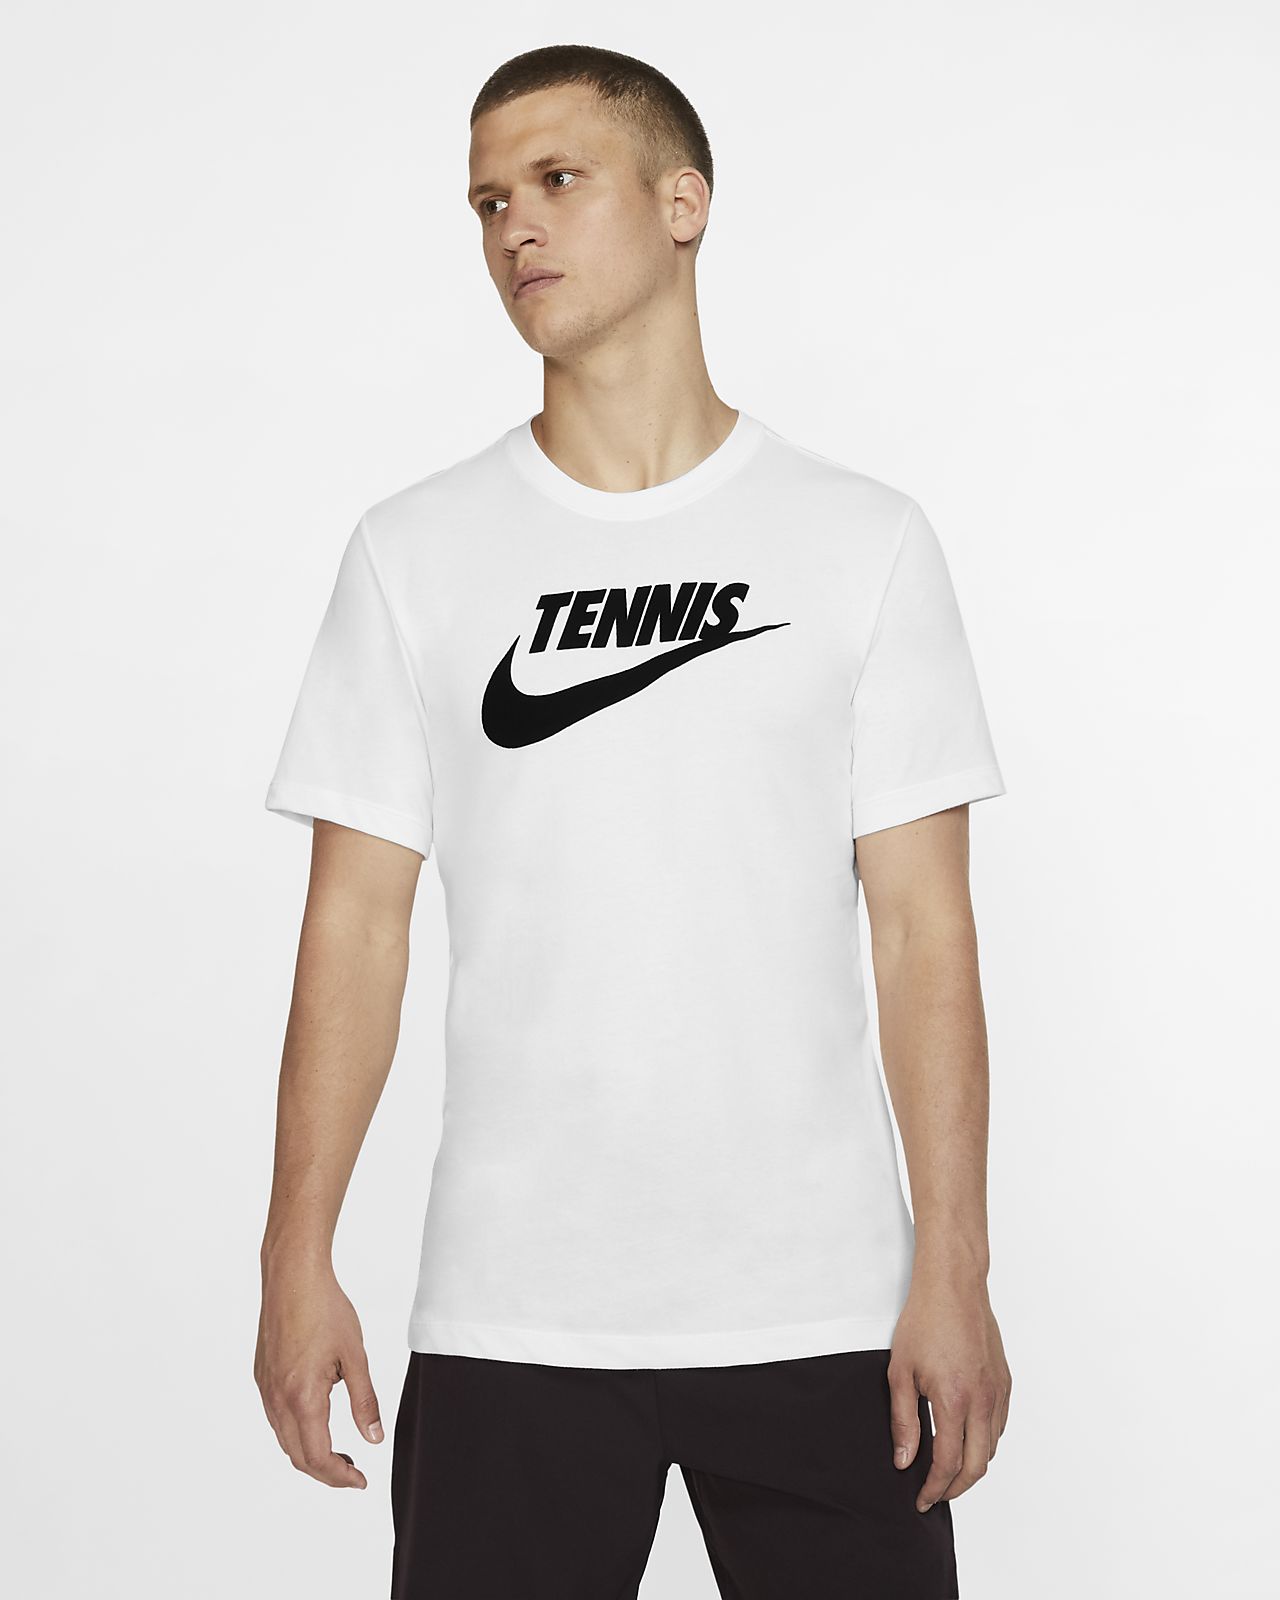 nike tennis t shirt women's